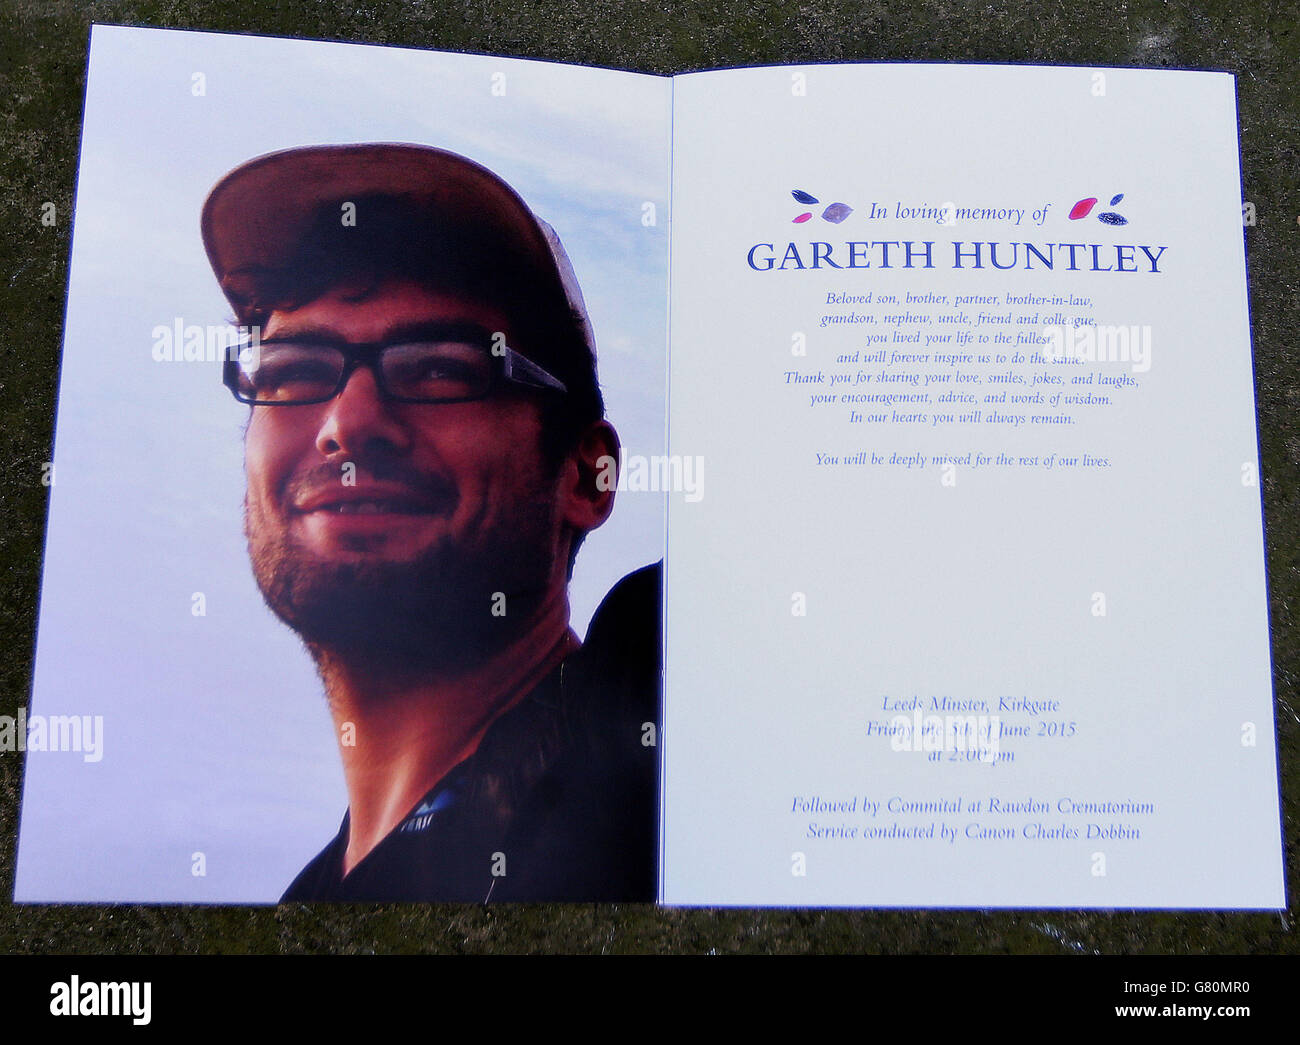 L'ordre de service pour les funérailles du routard Gareth Huntley, décédé en Malaisie il y a un an, à Leeds Minster. Banque D'Images